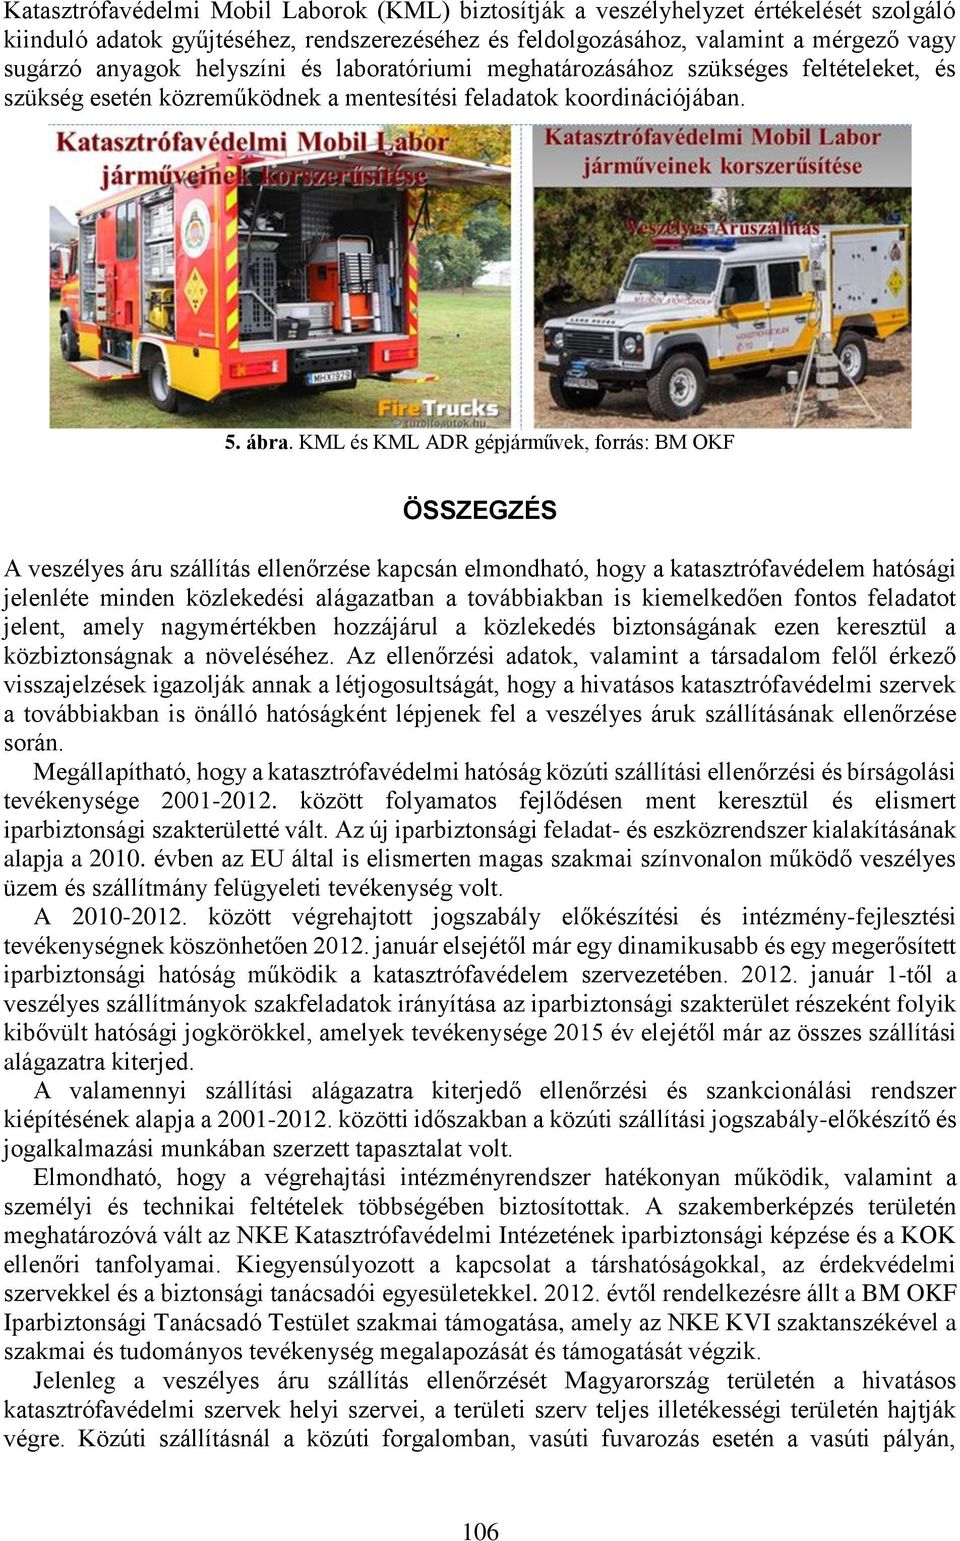 KML és KML ADR gépjárművek, forrás: BM OKF ÖSSZEGZÉS A veszélyes áru szállítás ellenőrzése kapcsán elmondható, hogy a katasztrófavédelem hatósági jelenléte minden közlekedési alágazatban a